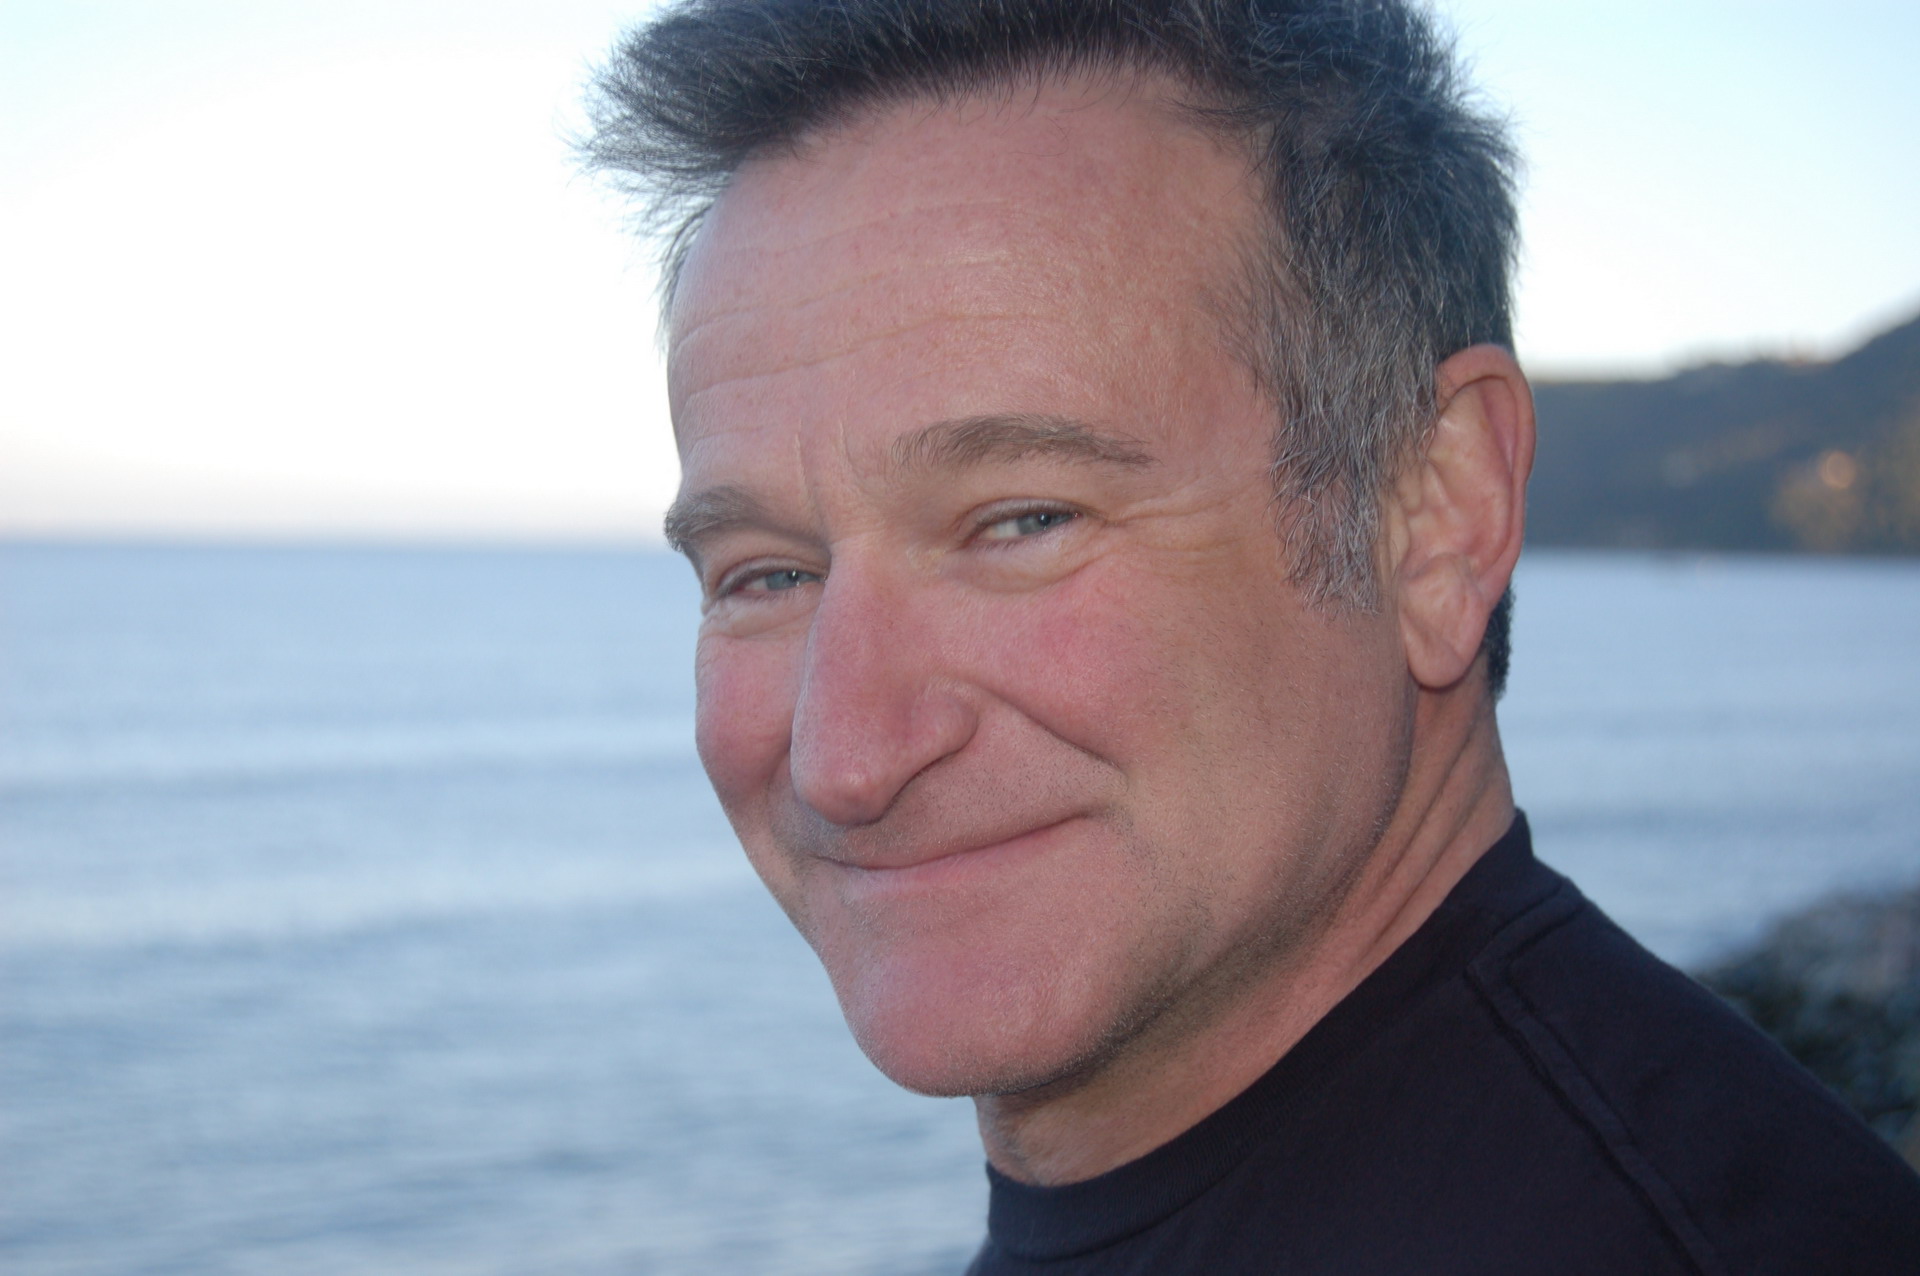 Meilleurs fonds d'écran Robin Williams pour l'écran du téléphone